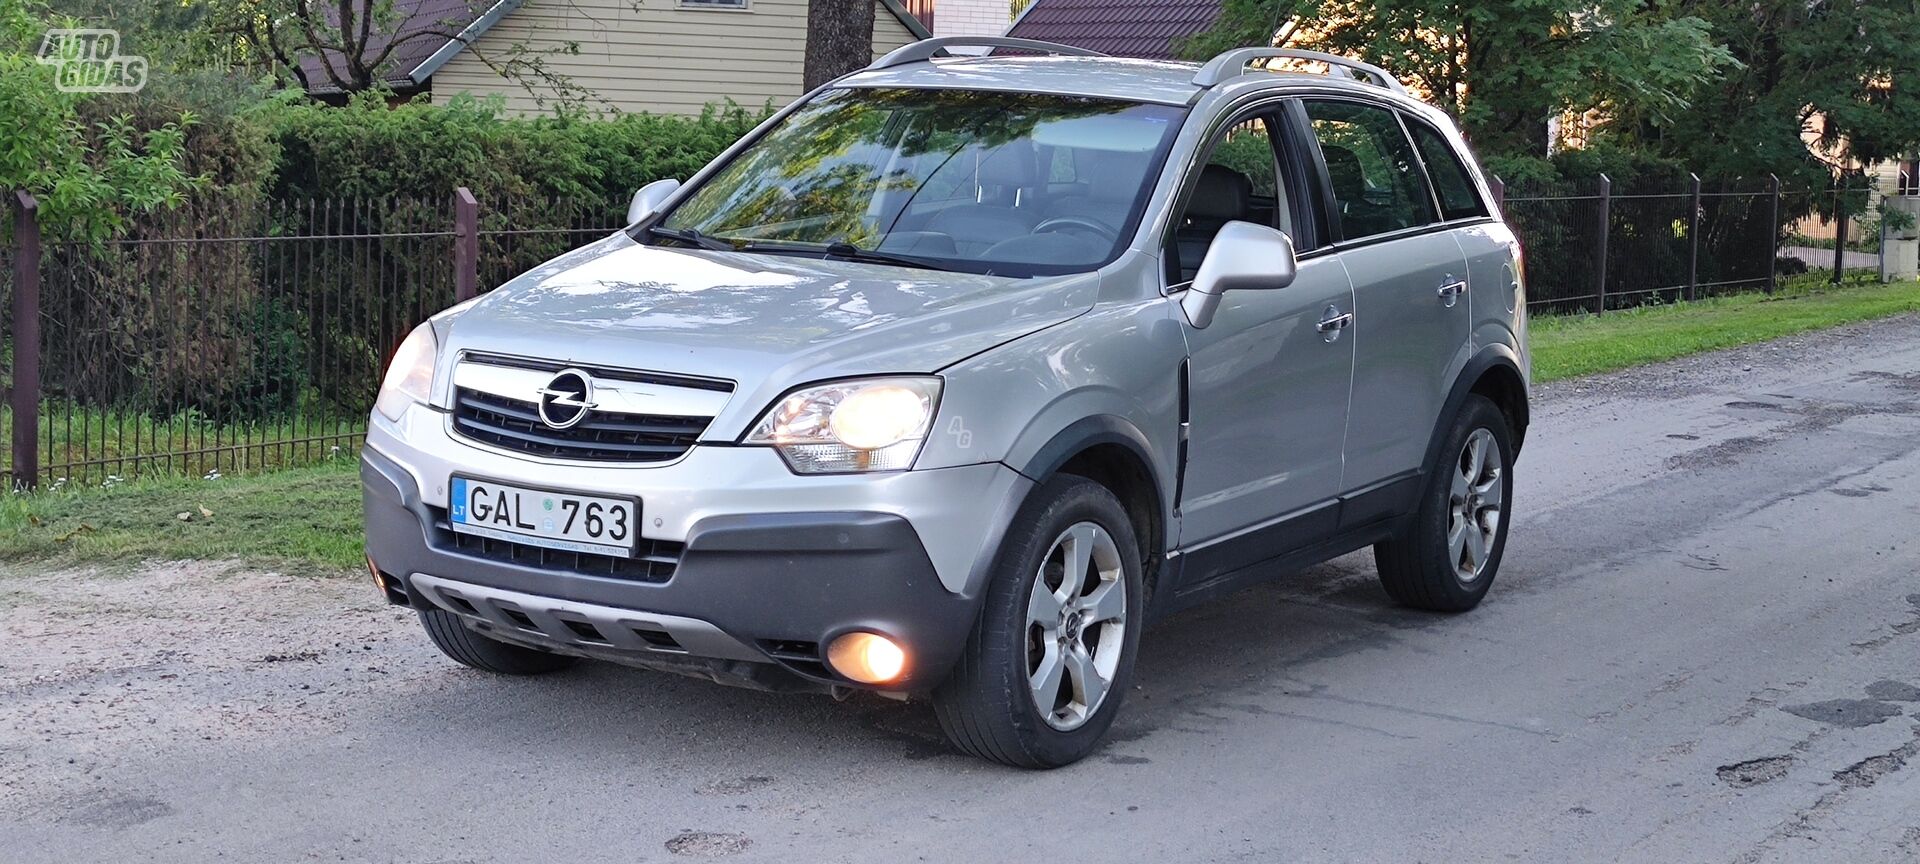 Opel Antara 2007 y Van